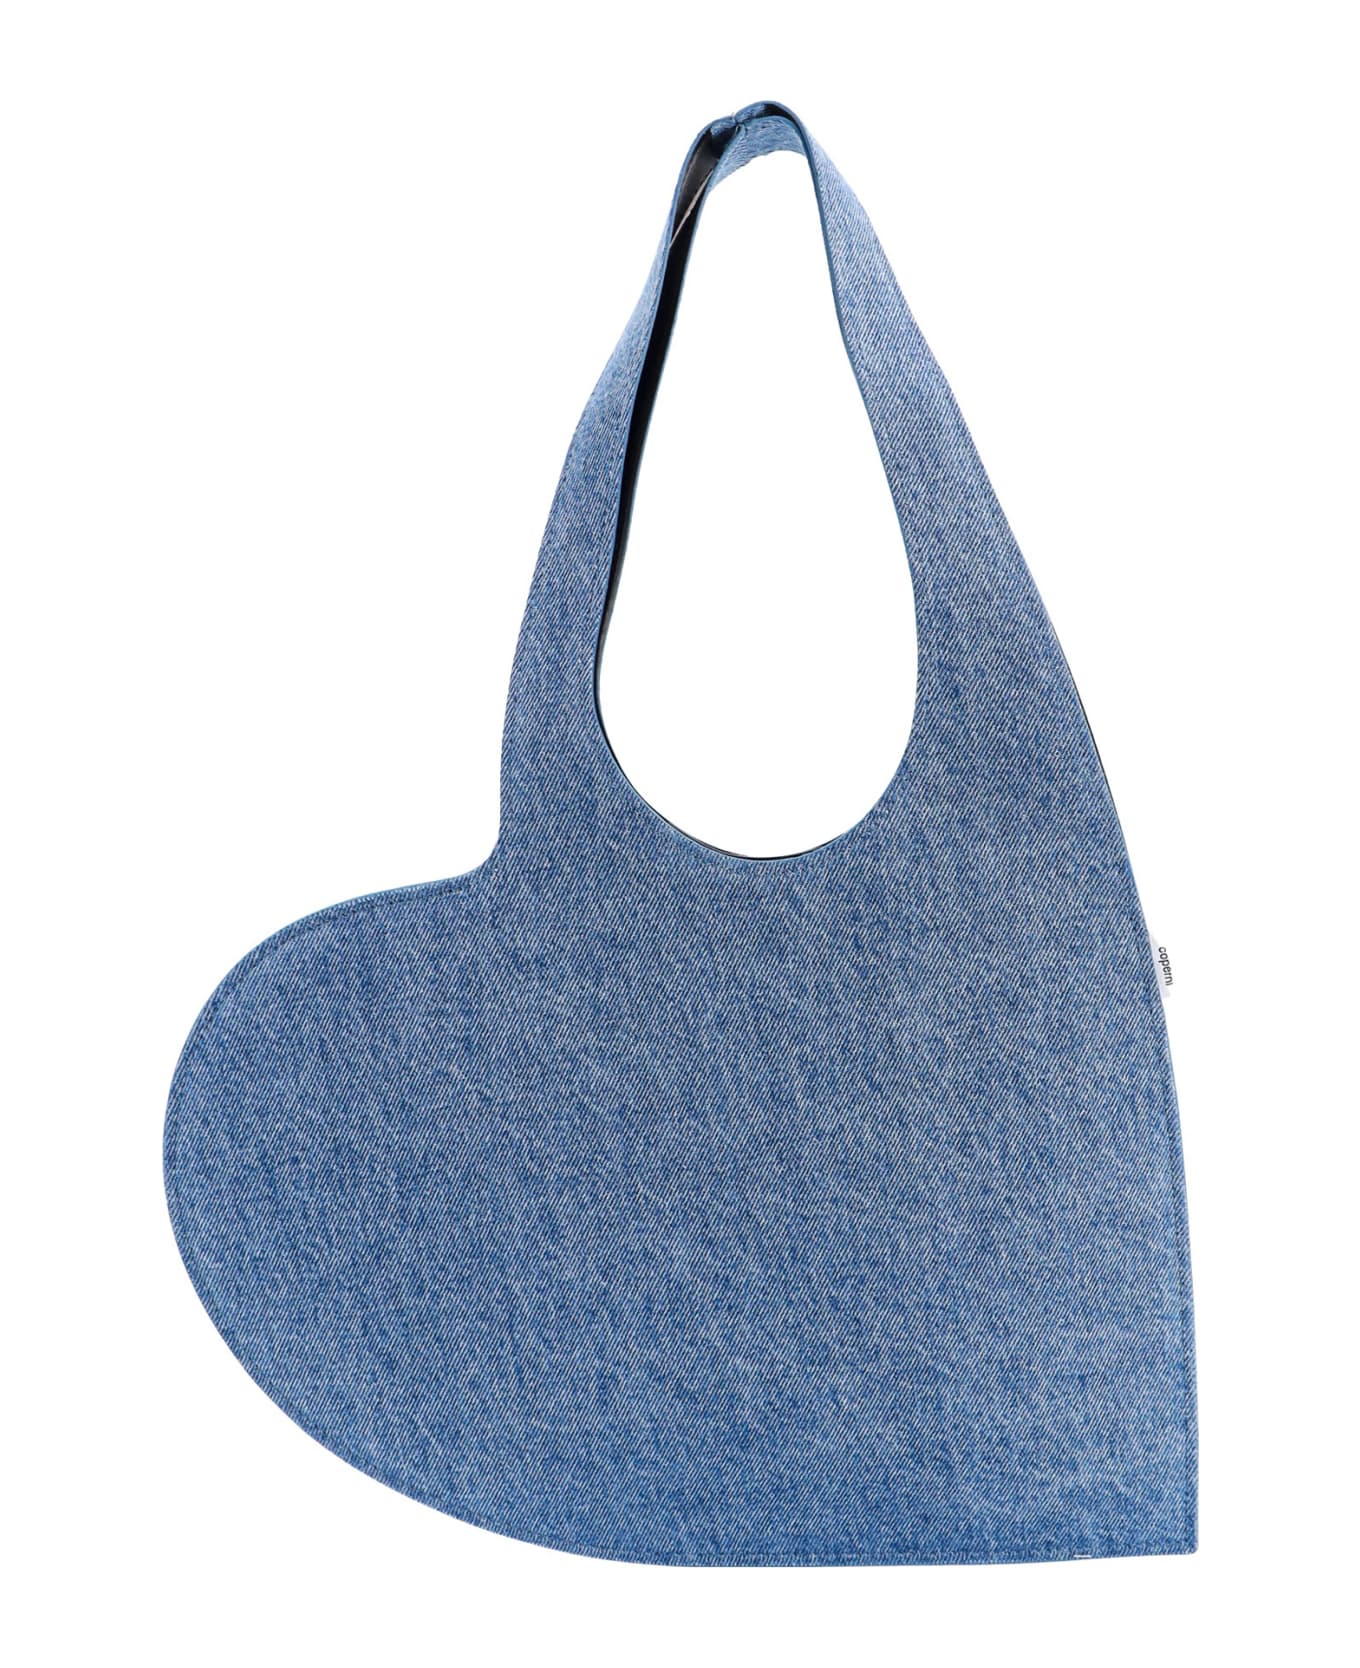 Coperni Shoulder Bag Shoulder Bag - WASHED BLUE トートバッグ